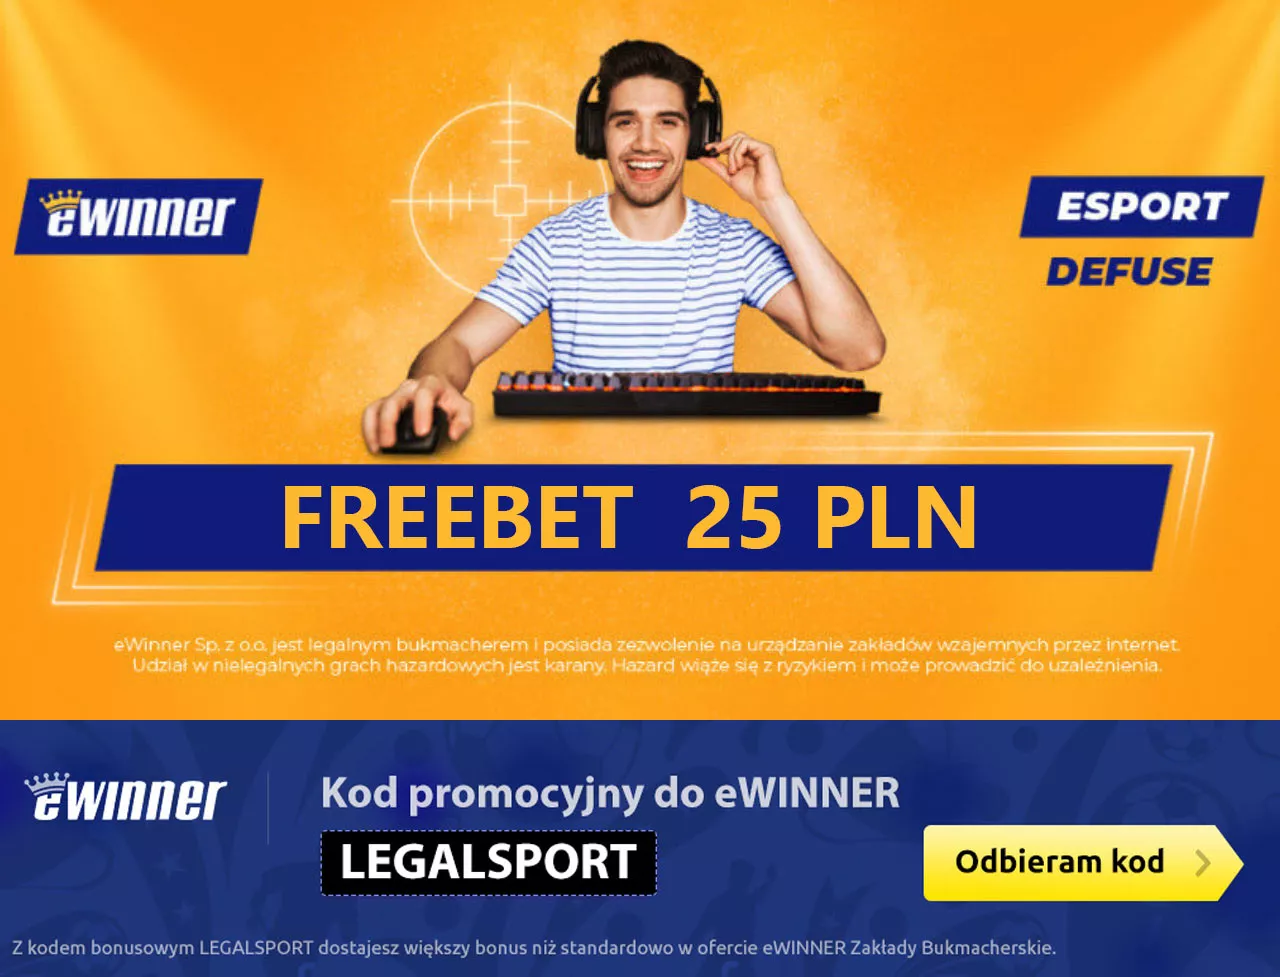 Freebet esportowy - 25 zł na zakłady (premia + bonus za kod promocyjny)